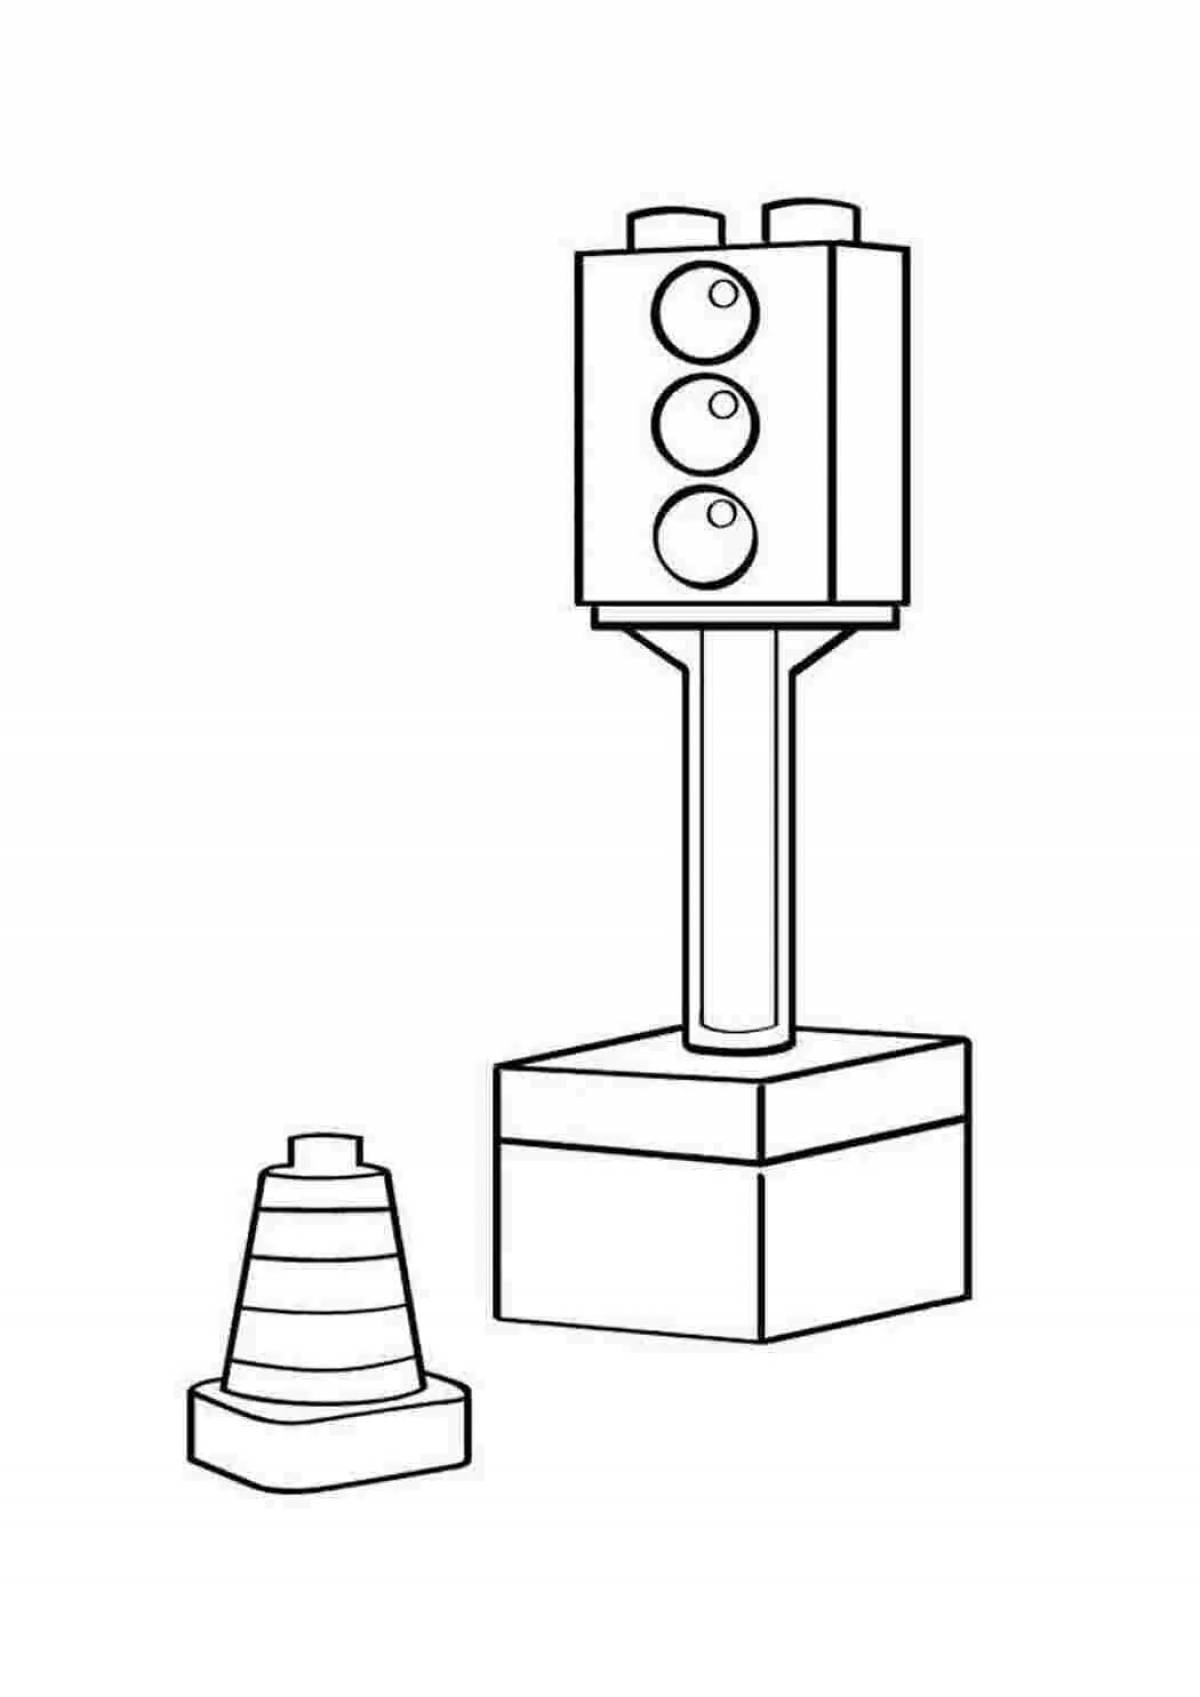 Traffic light for preschool children #9